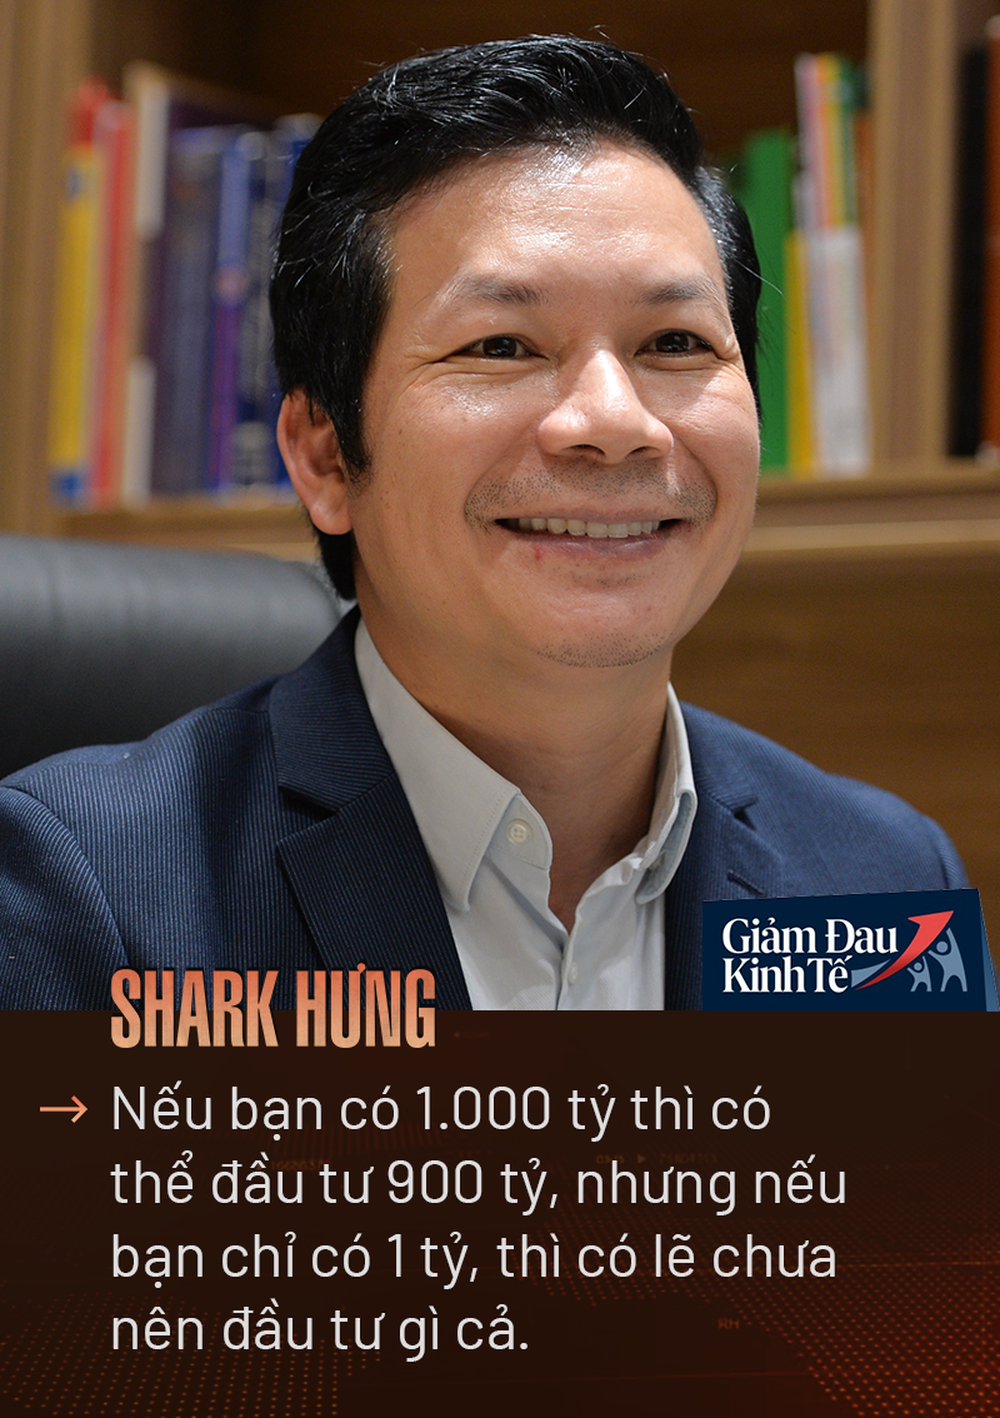 Shark Hưng: Chúng tôi đã chuẩn bị cho khả năng chịu đựng khủng hoảng lên tới 100 tháng! - Ảnh 10.